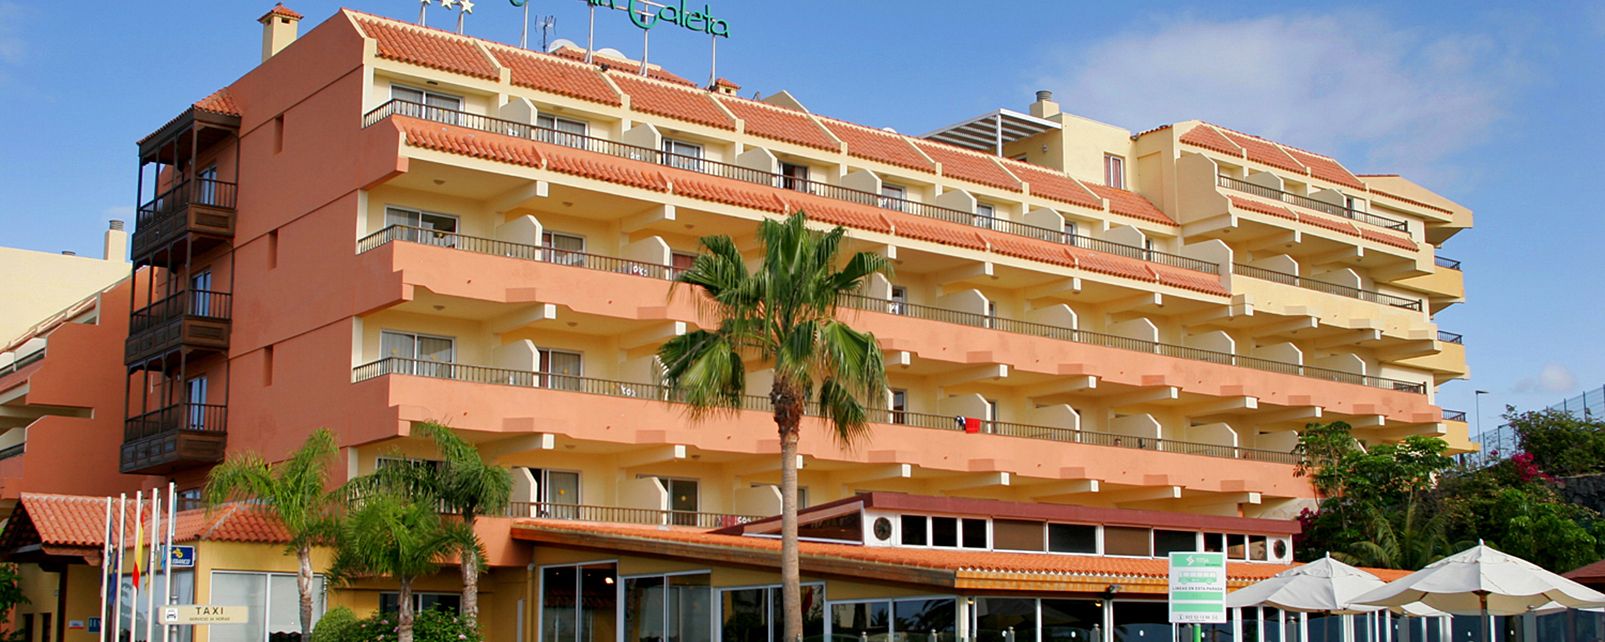 Hotel Hovima Jardin Caleta